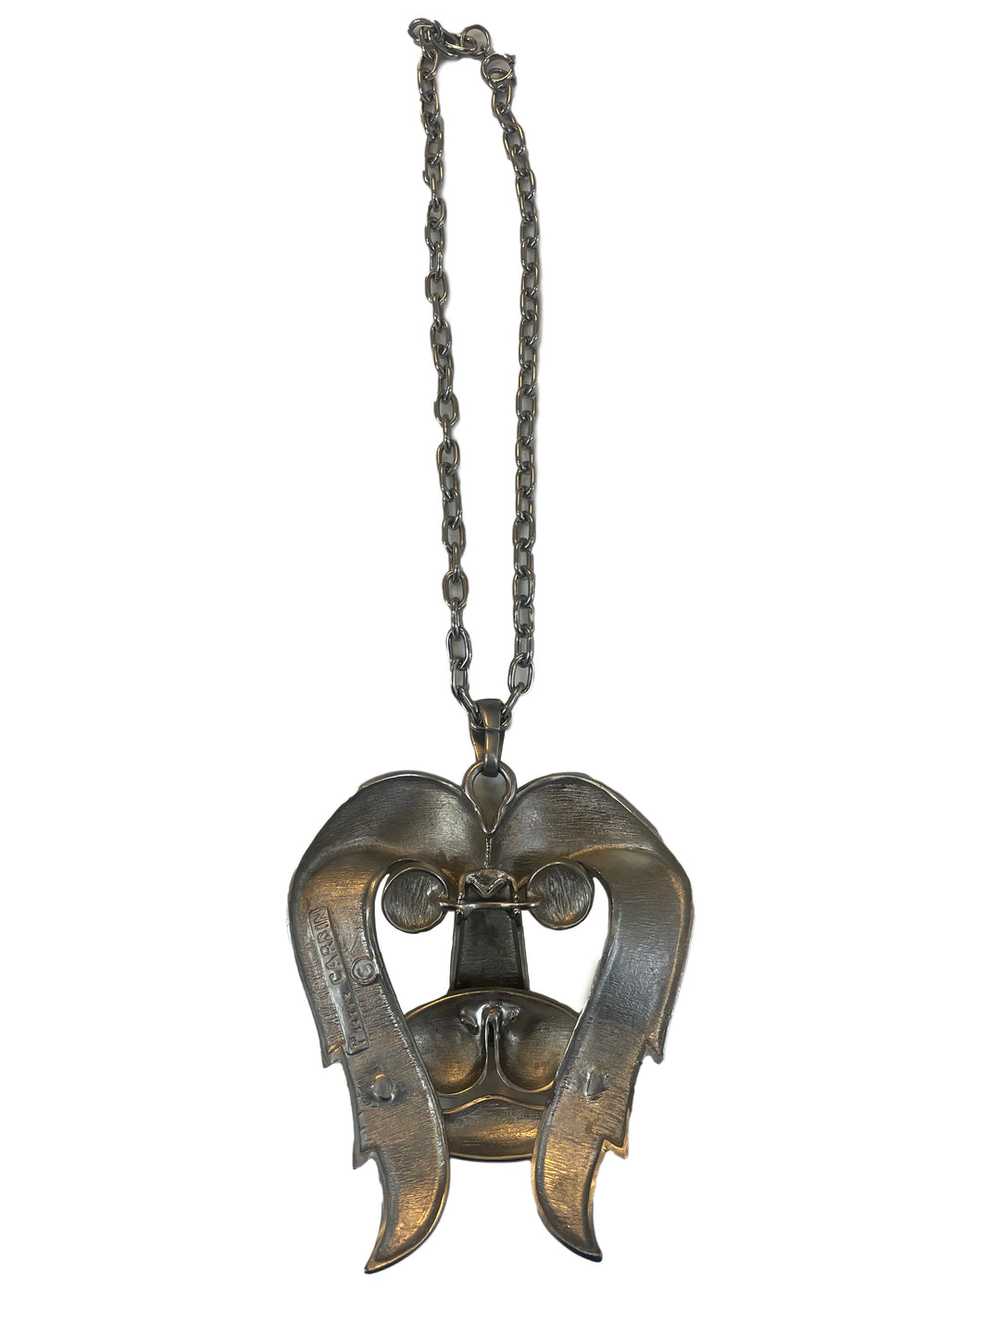 Pierre Cardin 70s Pewter Lion Pendant Necklace - image 2